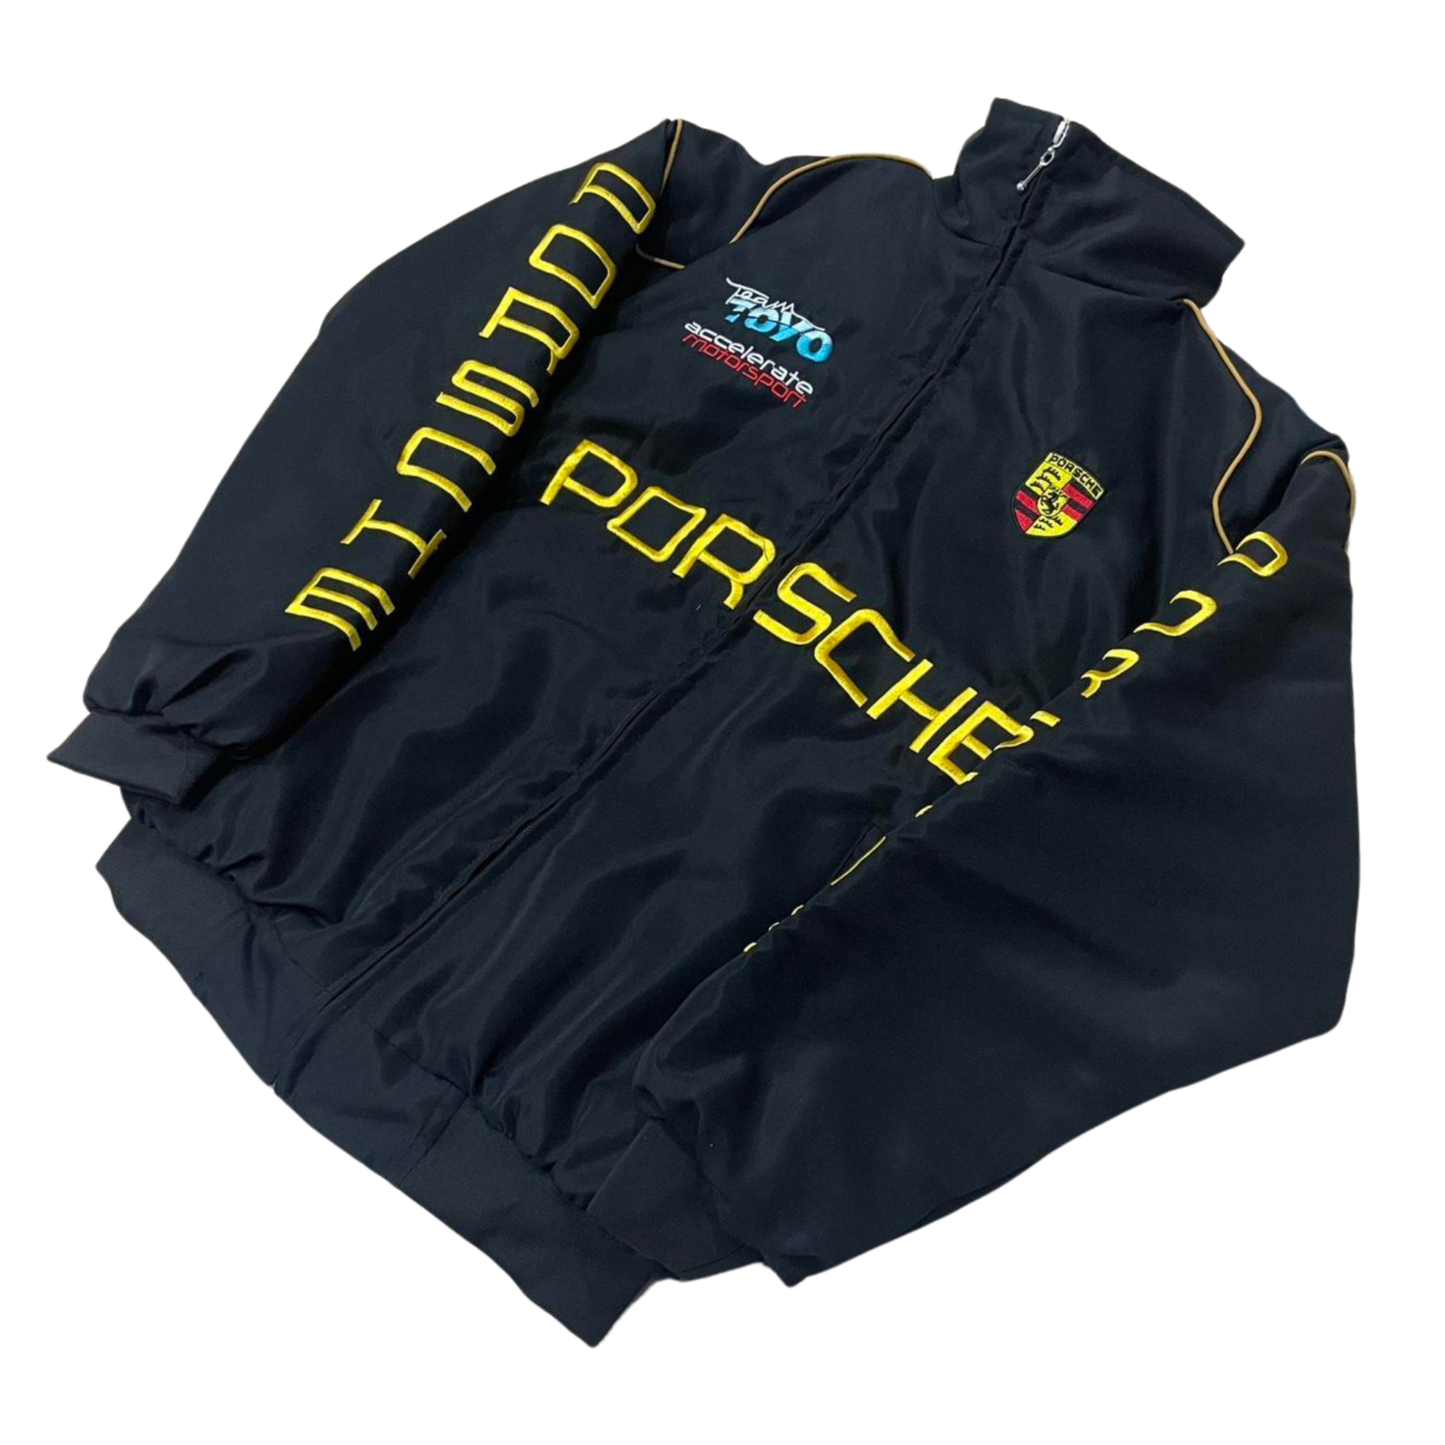 Unisex Porsche Jacket